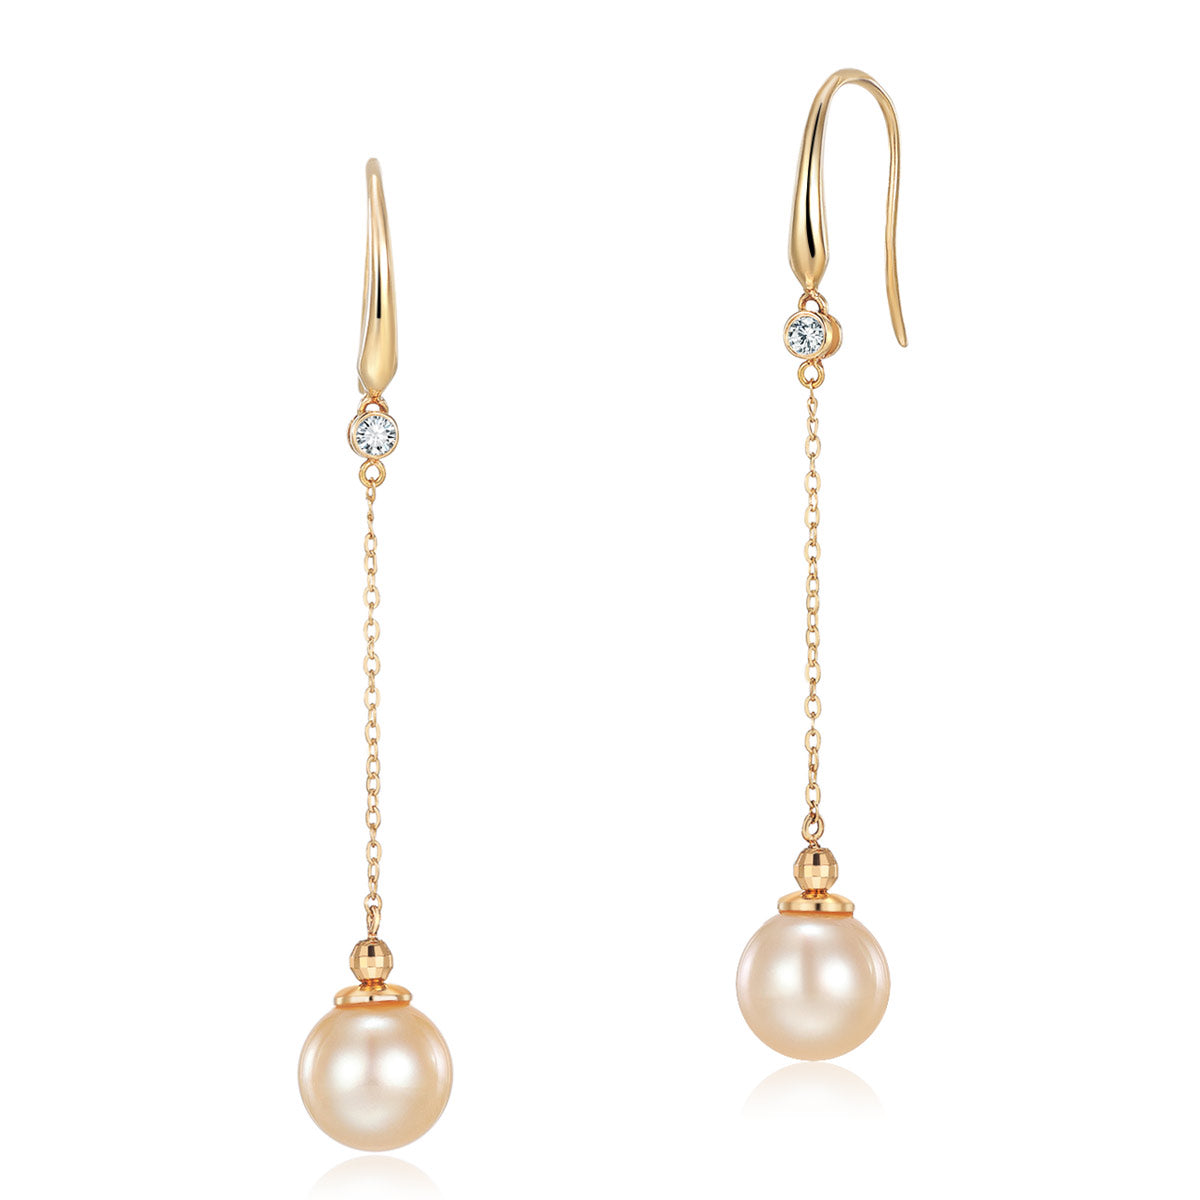 18K黄金鑽石南洋金珍珠(9 mm) Pearl Earrings 耳墜耳環精品珠寶